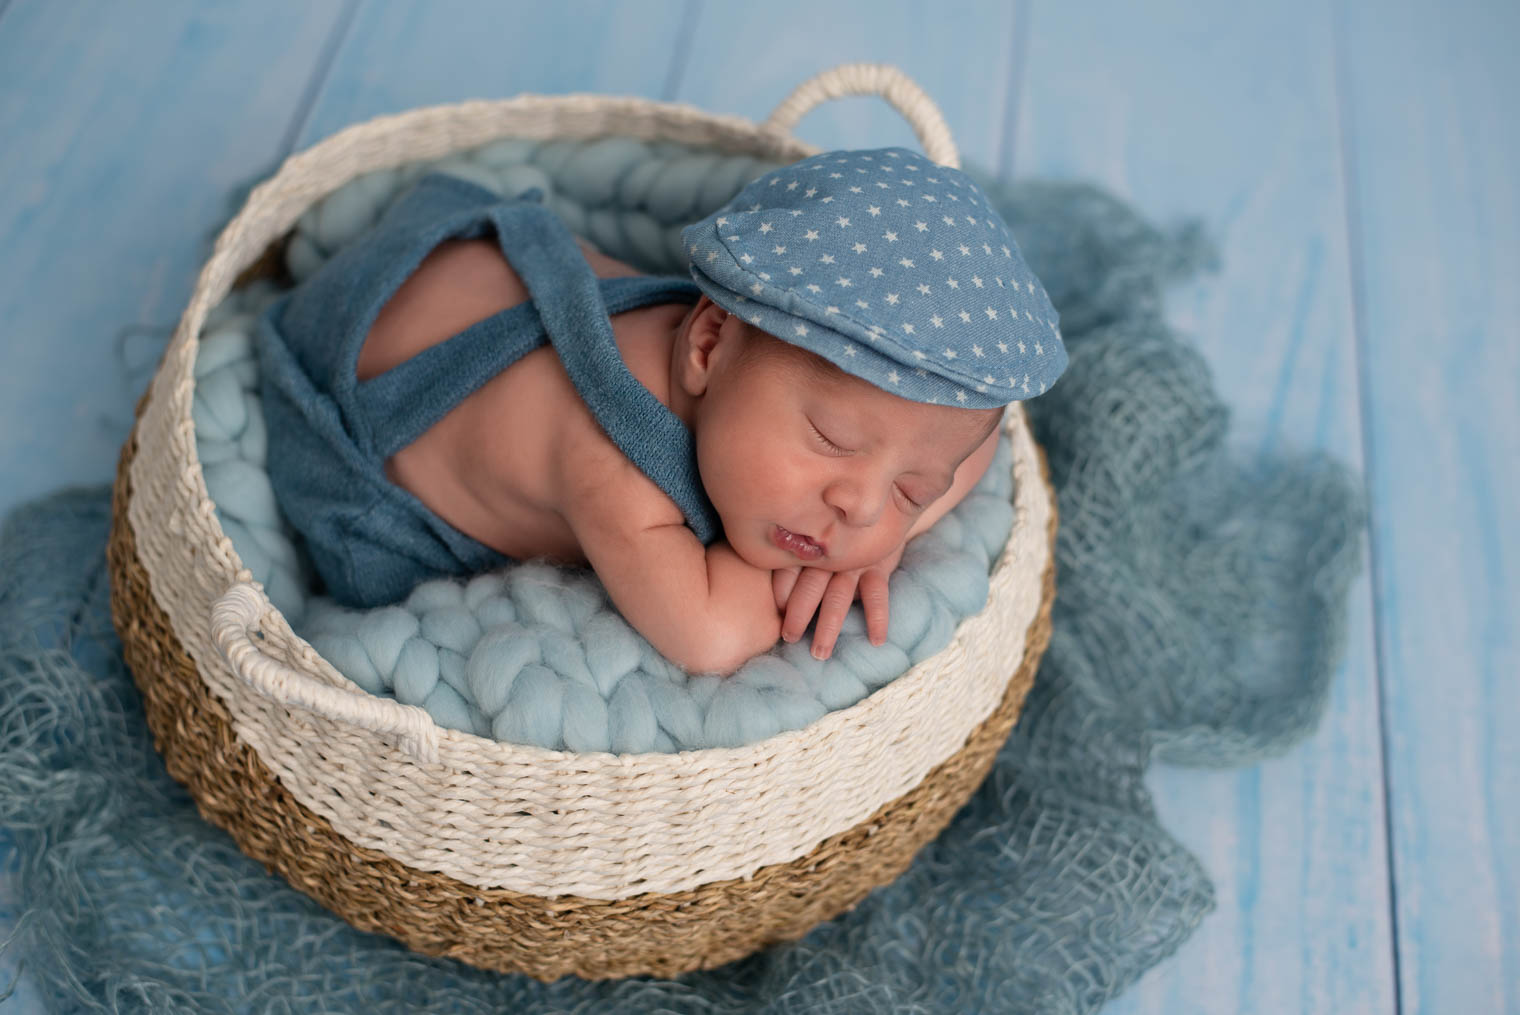 Nouveau-né garçon allongé sur le ventre dans un panier, sur une couverture en laine bleu, il porte une salopette et un béret bleu avec des petites étoiles blanche